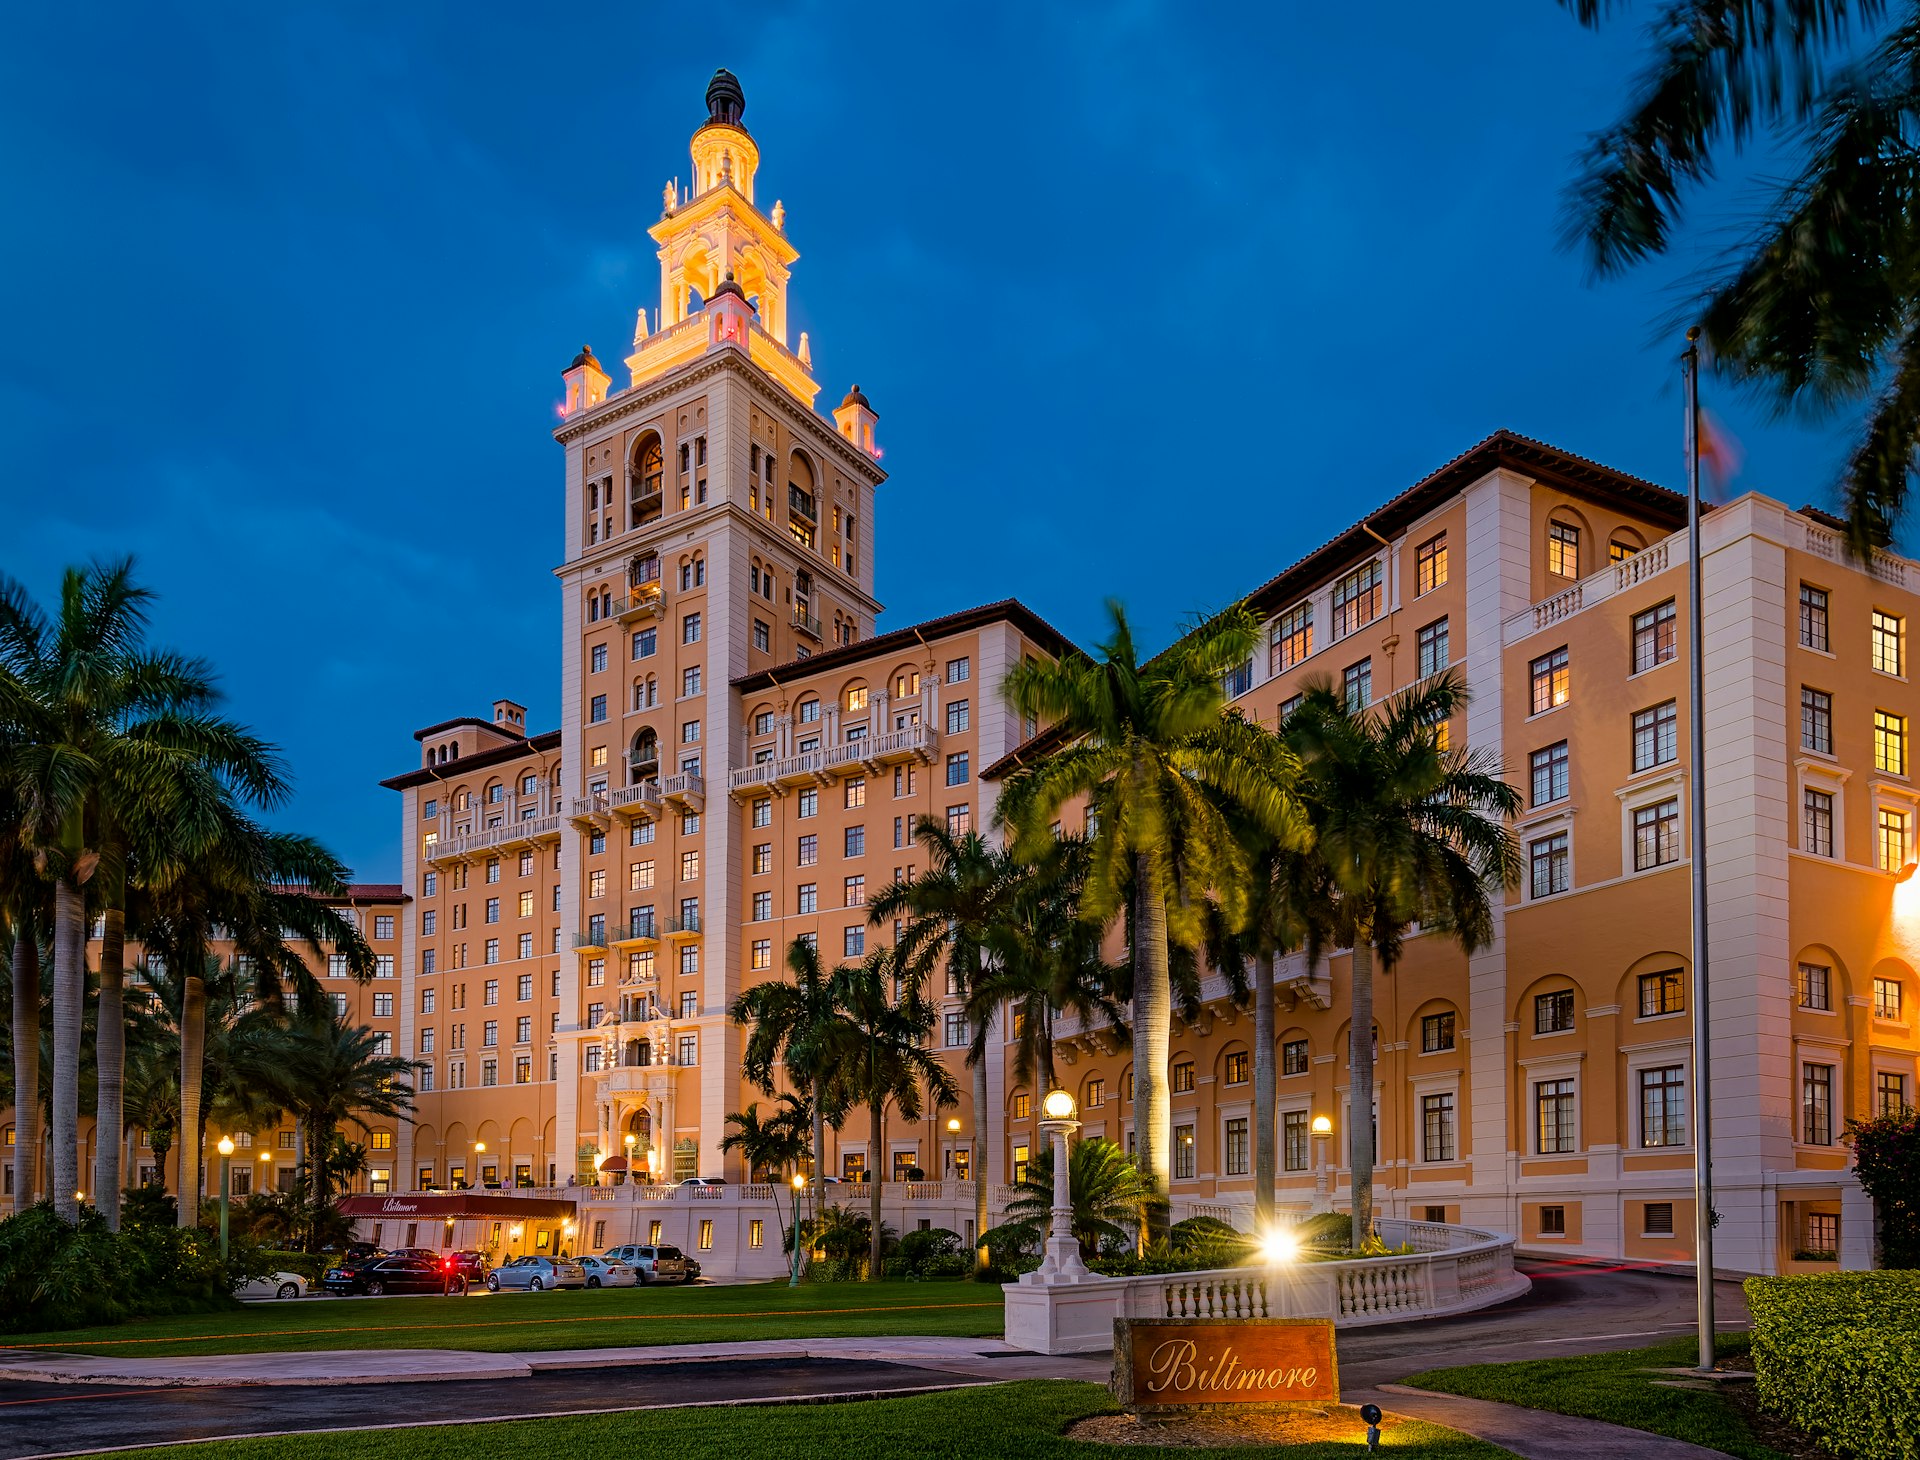 The Biltmore Hotel in Miami